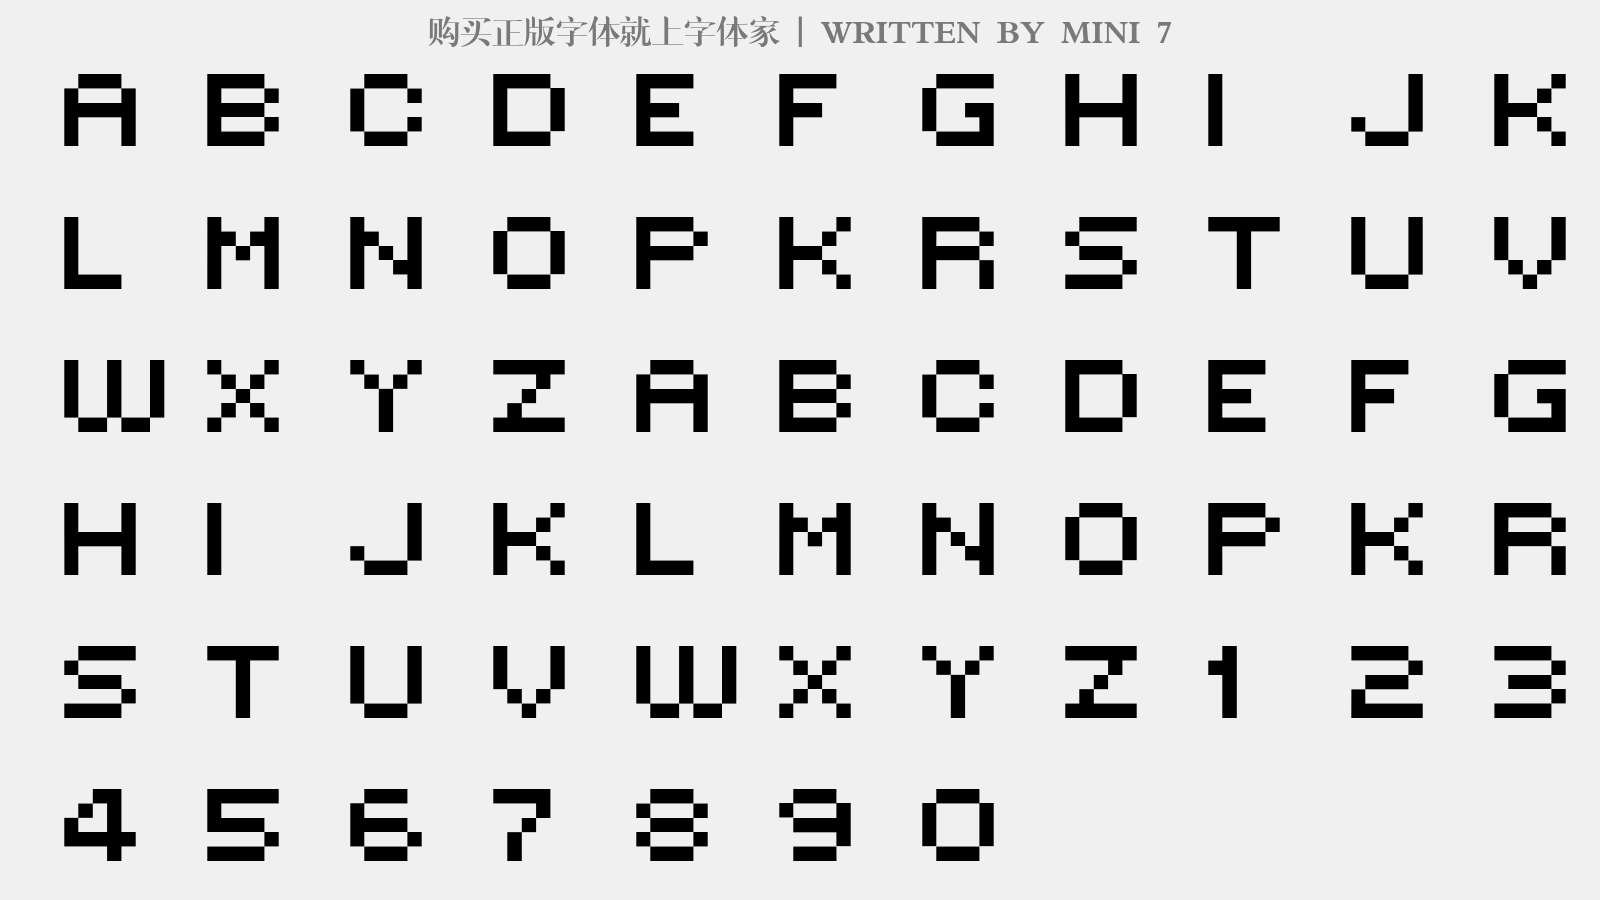 MINI 7 - 大写字母/小写字母/数字